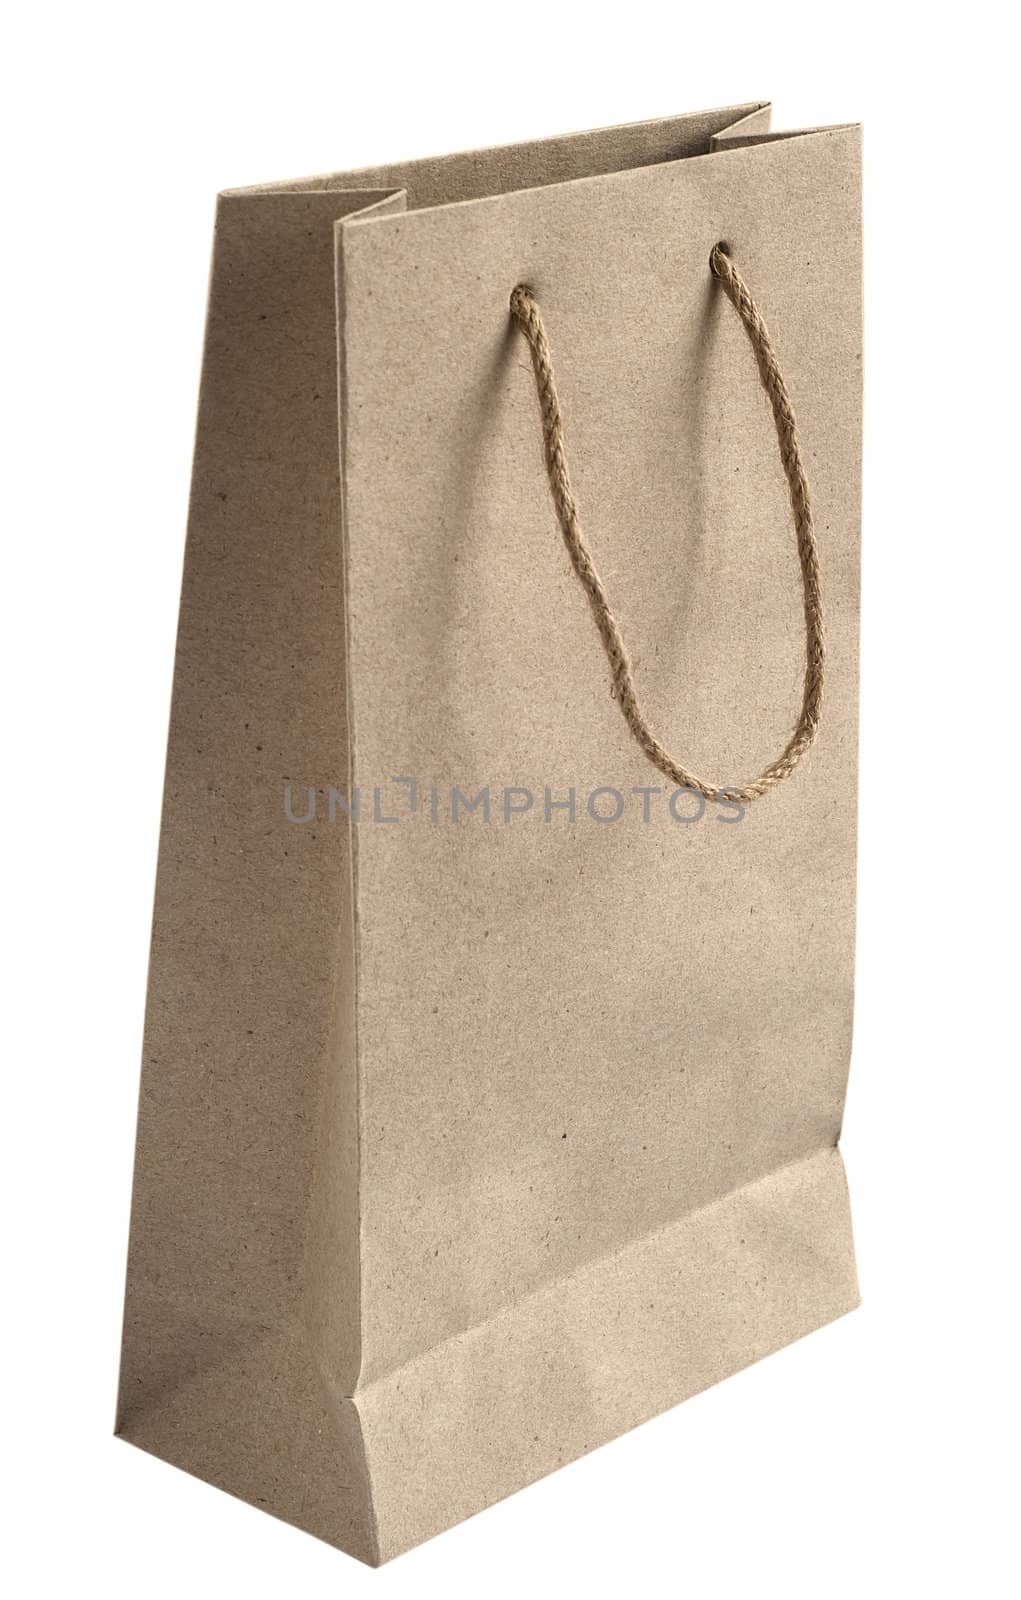 Recycled paper bag with hemp rope handles by varbenov